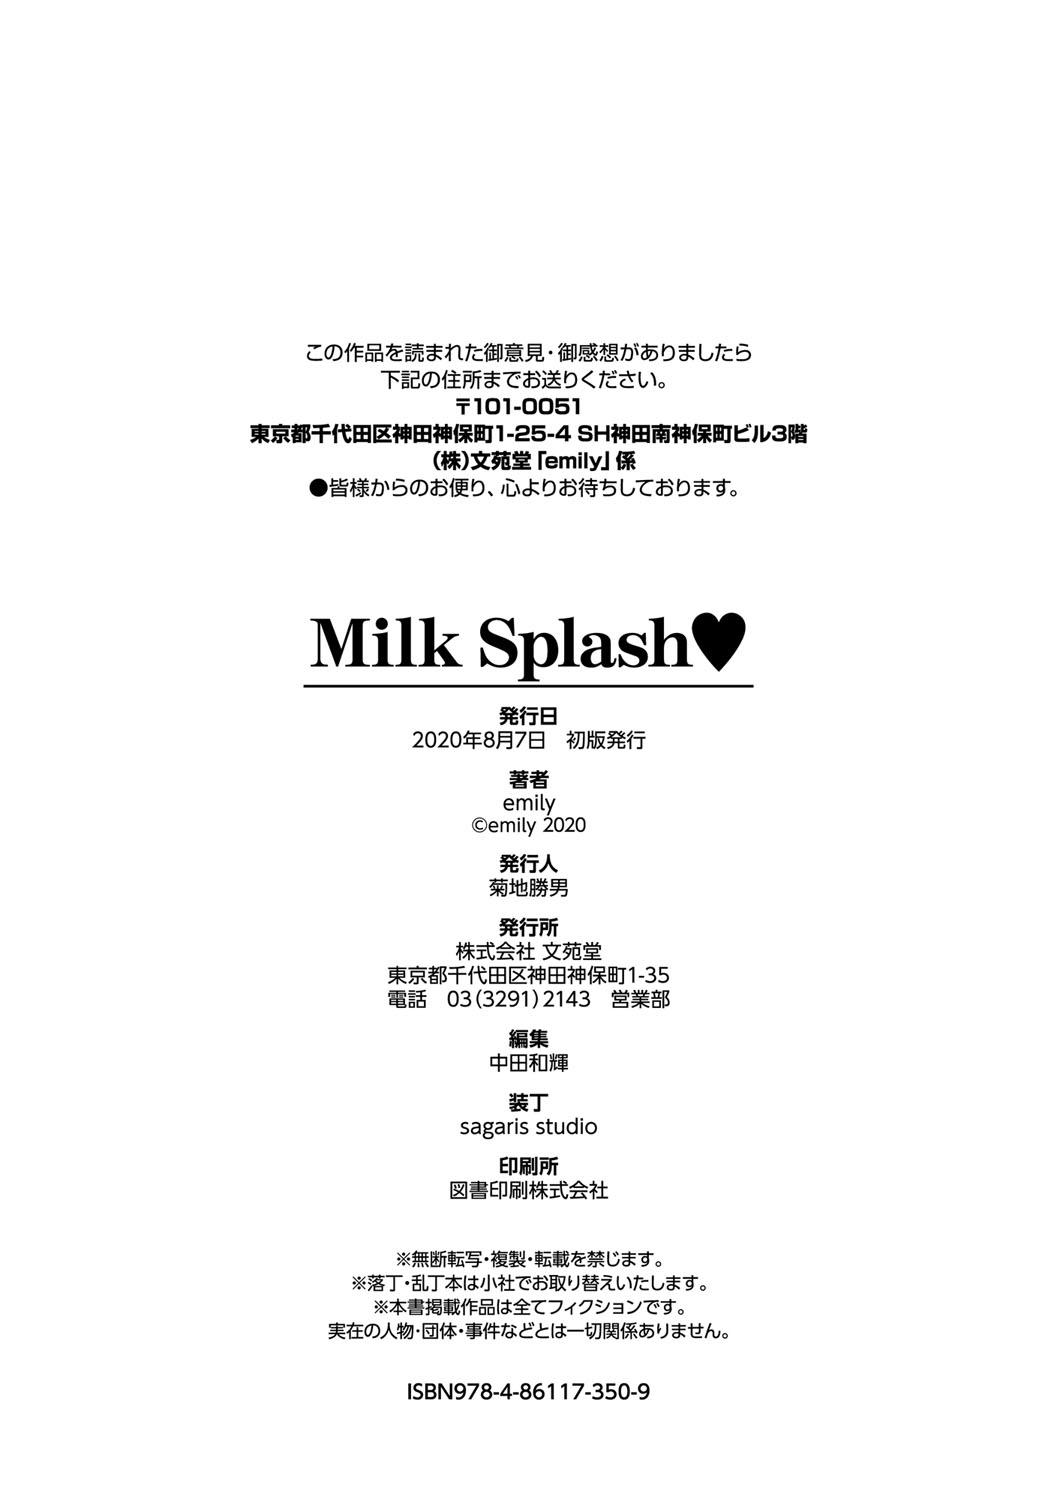 Milk Splash 202